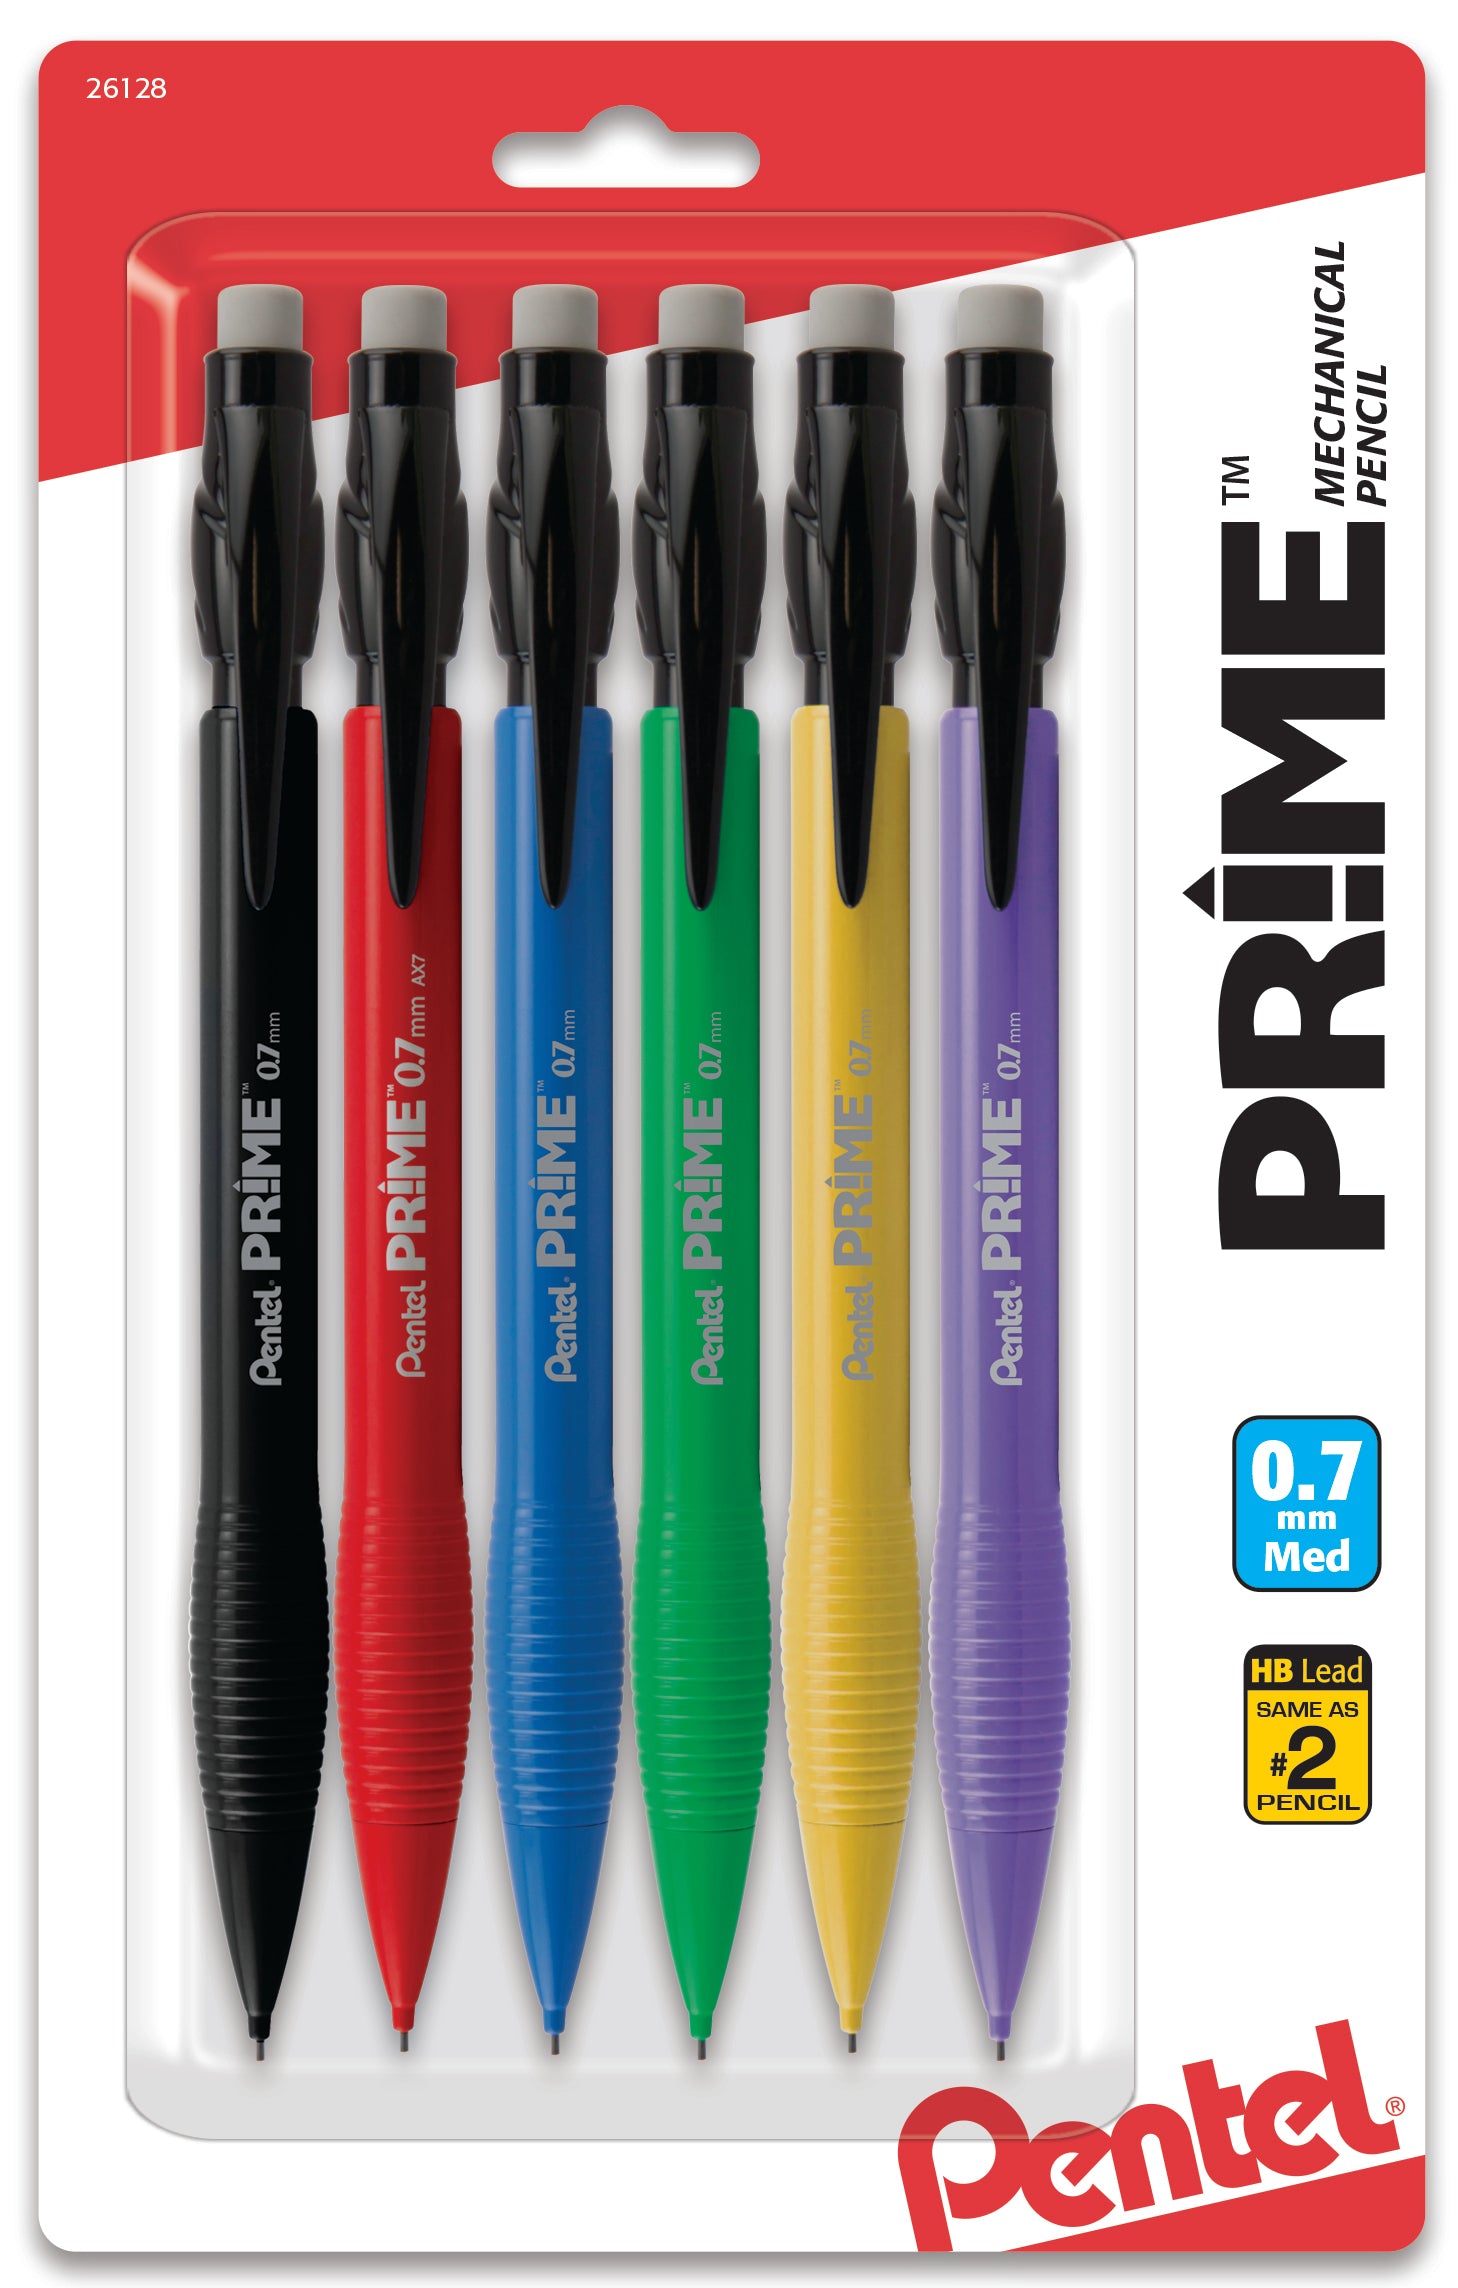 PRIME Mechanical Pencil (0.7mm) Assorted Barrel Colors (A/B/C/D/G/V), –  Pentel of America, Ltd.